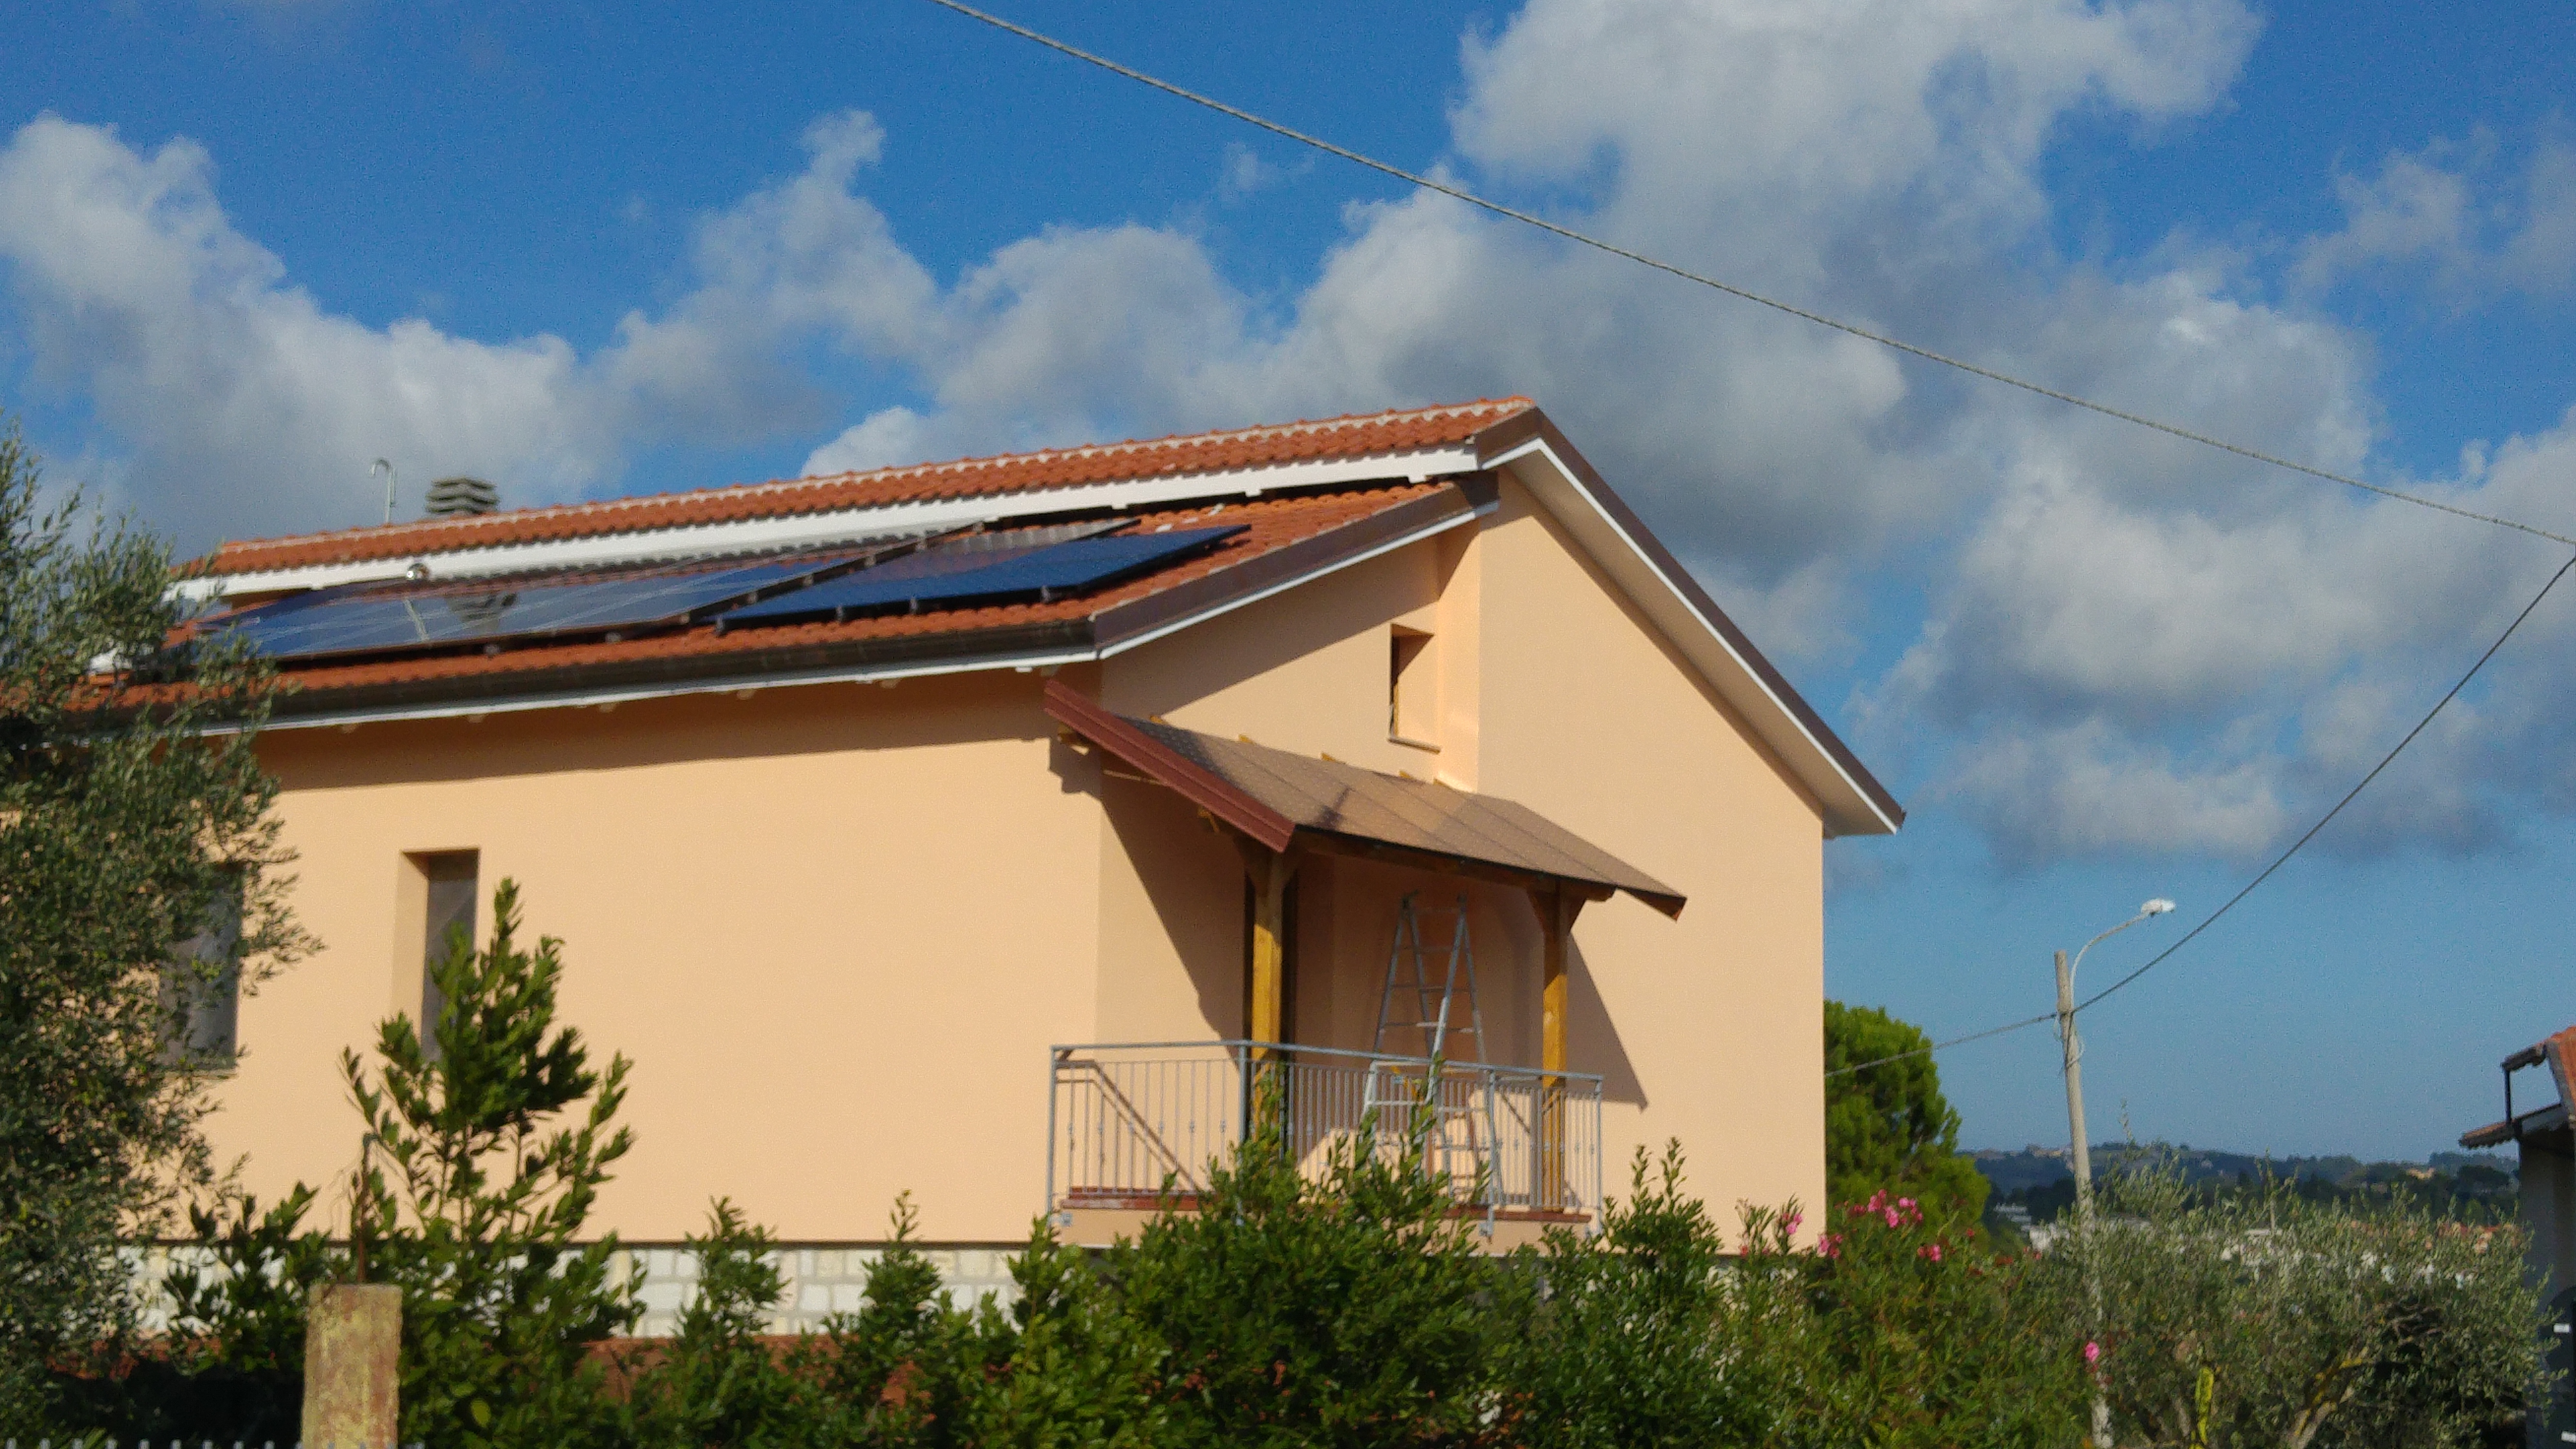 Fotovoltaico SunPower® a Ancona (AN)